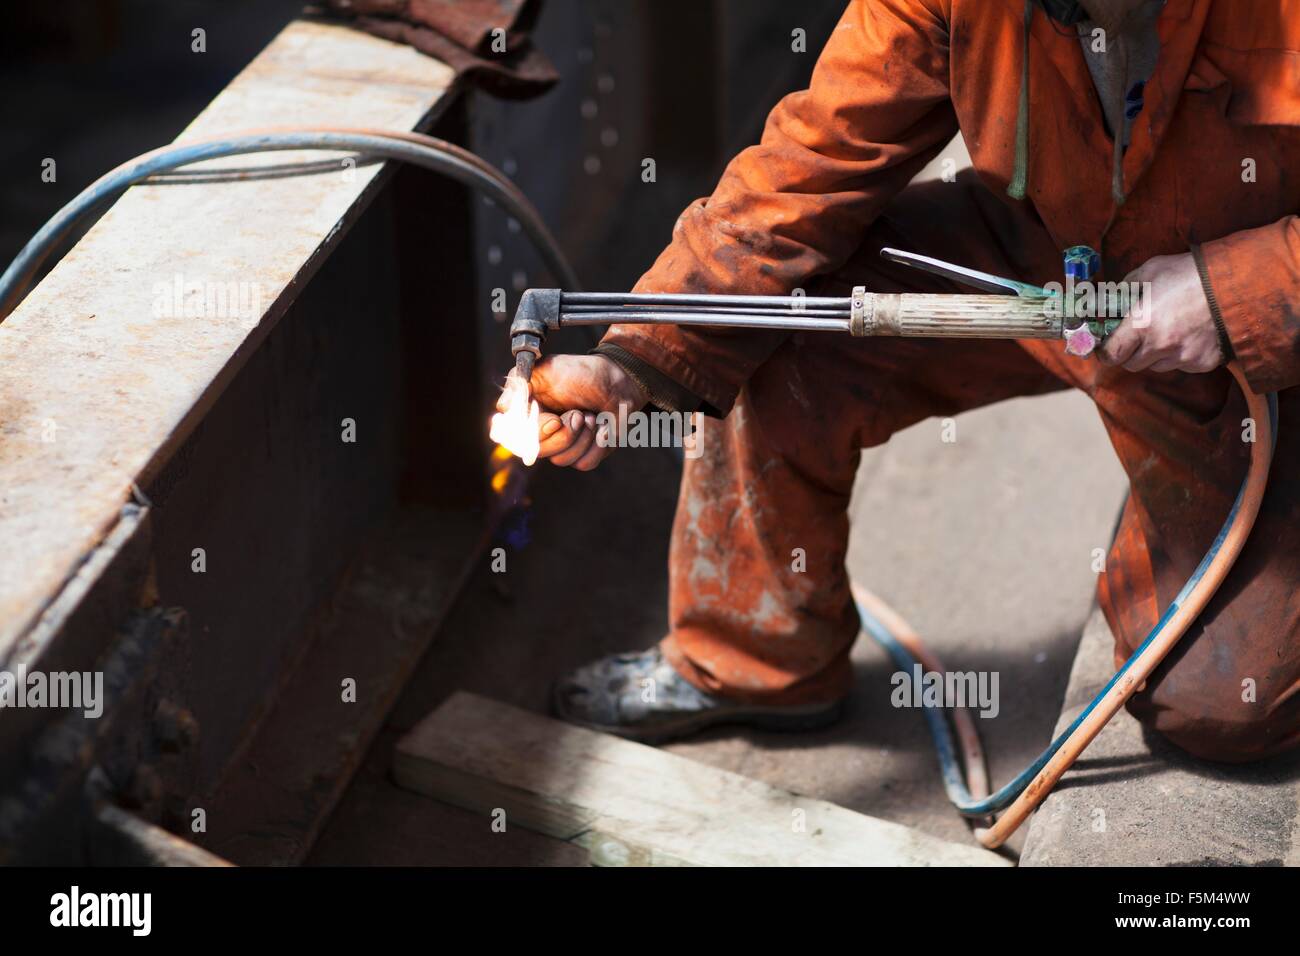 Welder lighting welding flame in shipyard workshop Stock Photo